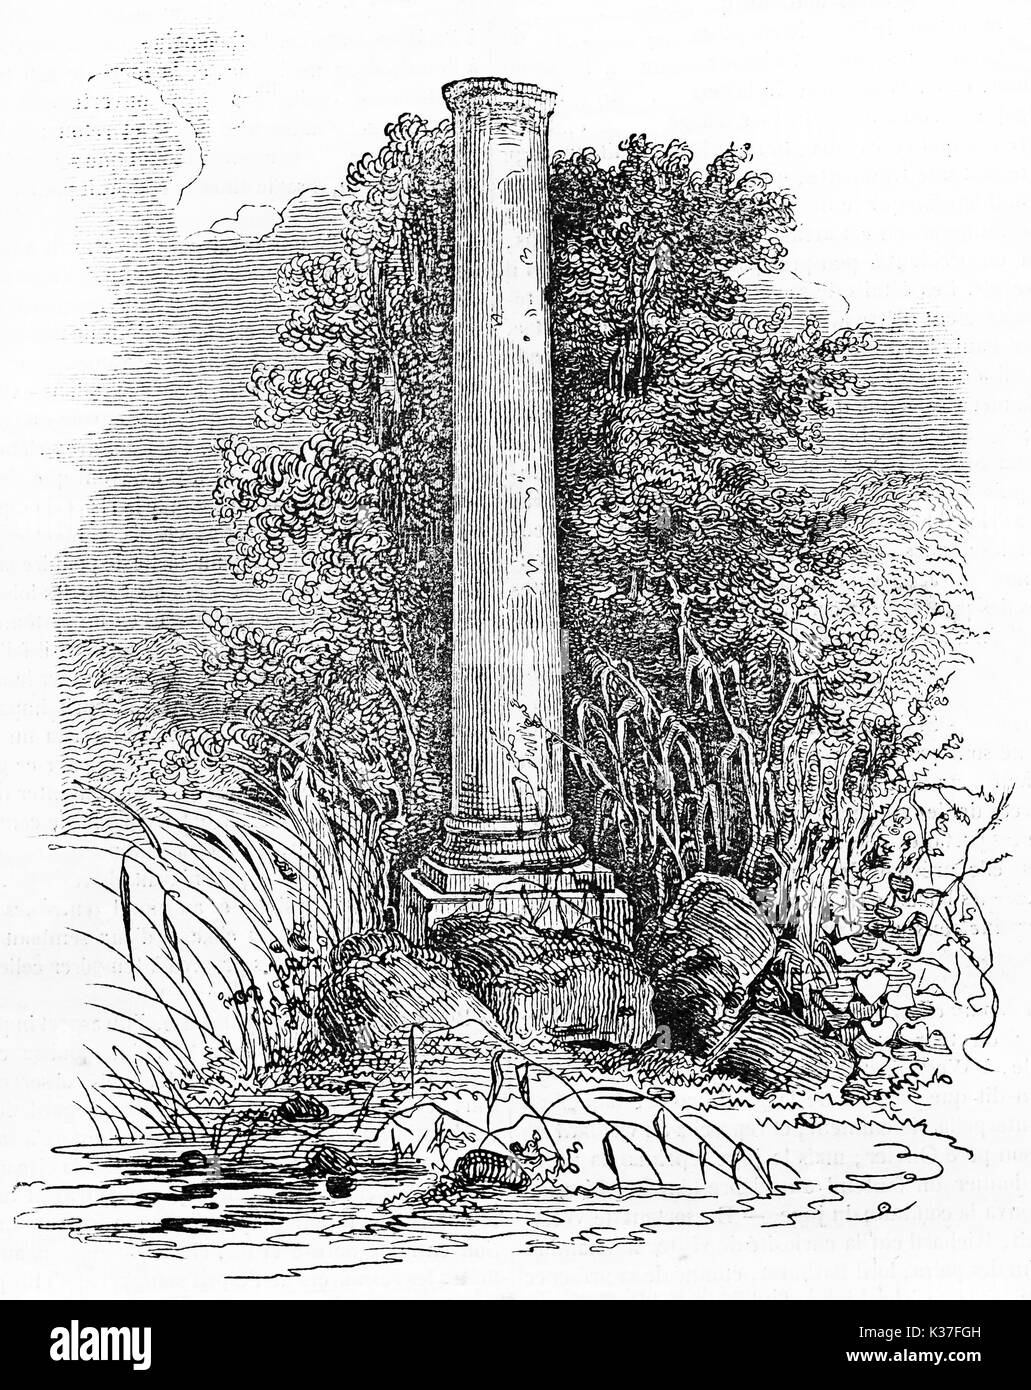 Antica colonna in pietra circondato da vegetazione ed erbacce, il monumento funerario di Daubenton nel Jardin des Plantes Parigi. Vecchia illustrazione dal Chevalier pubblicato il Magasin pittoresco Parigi 1834 Foto Stock